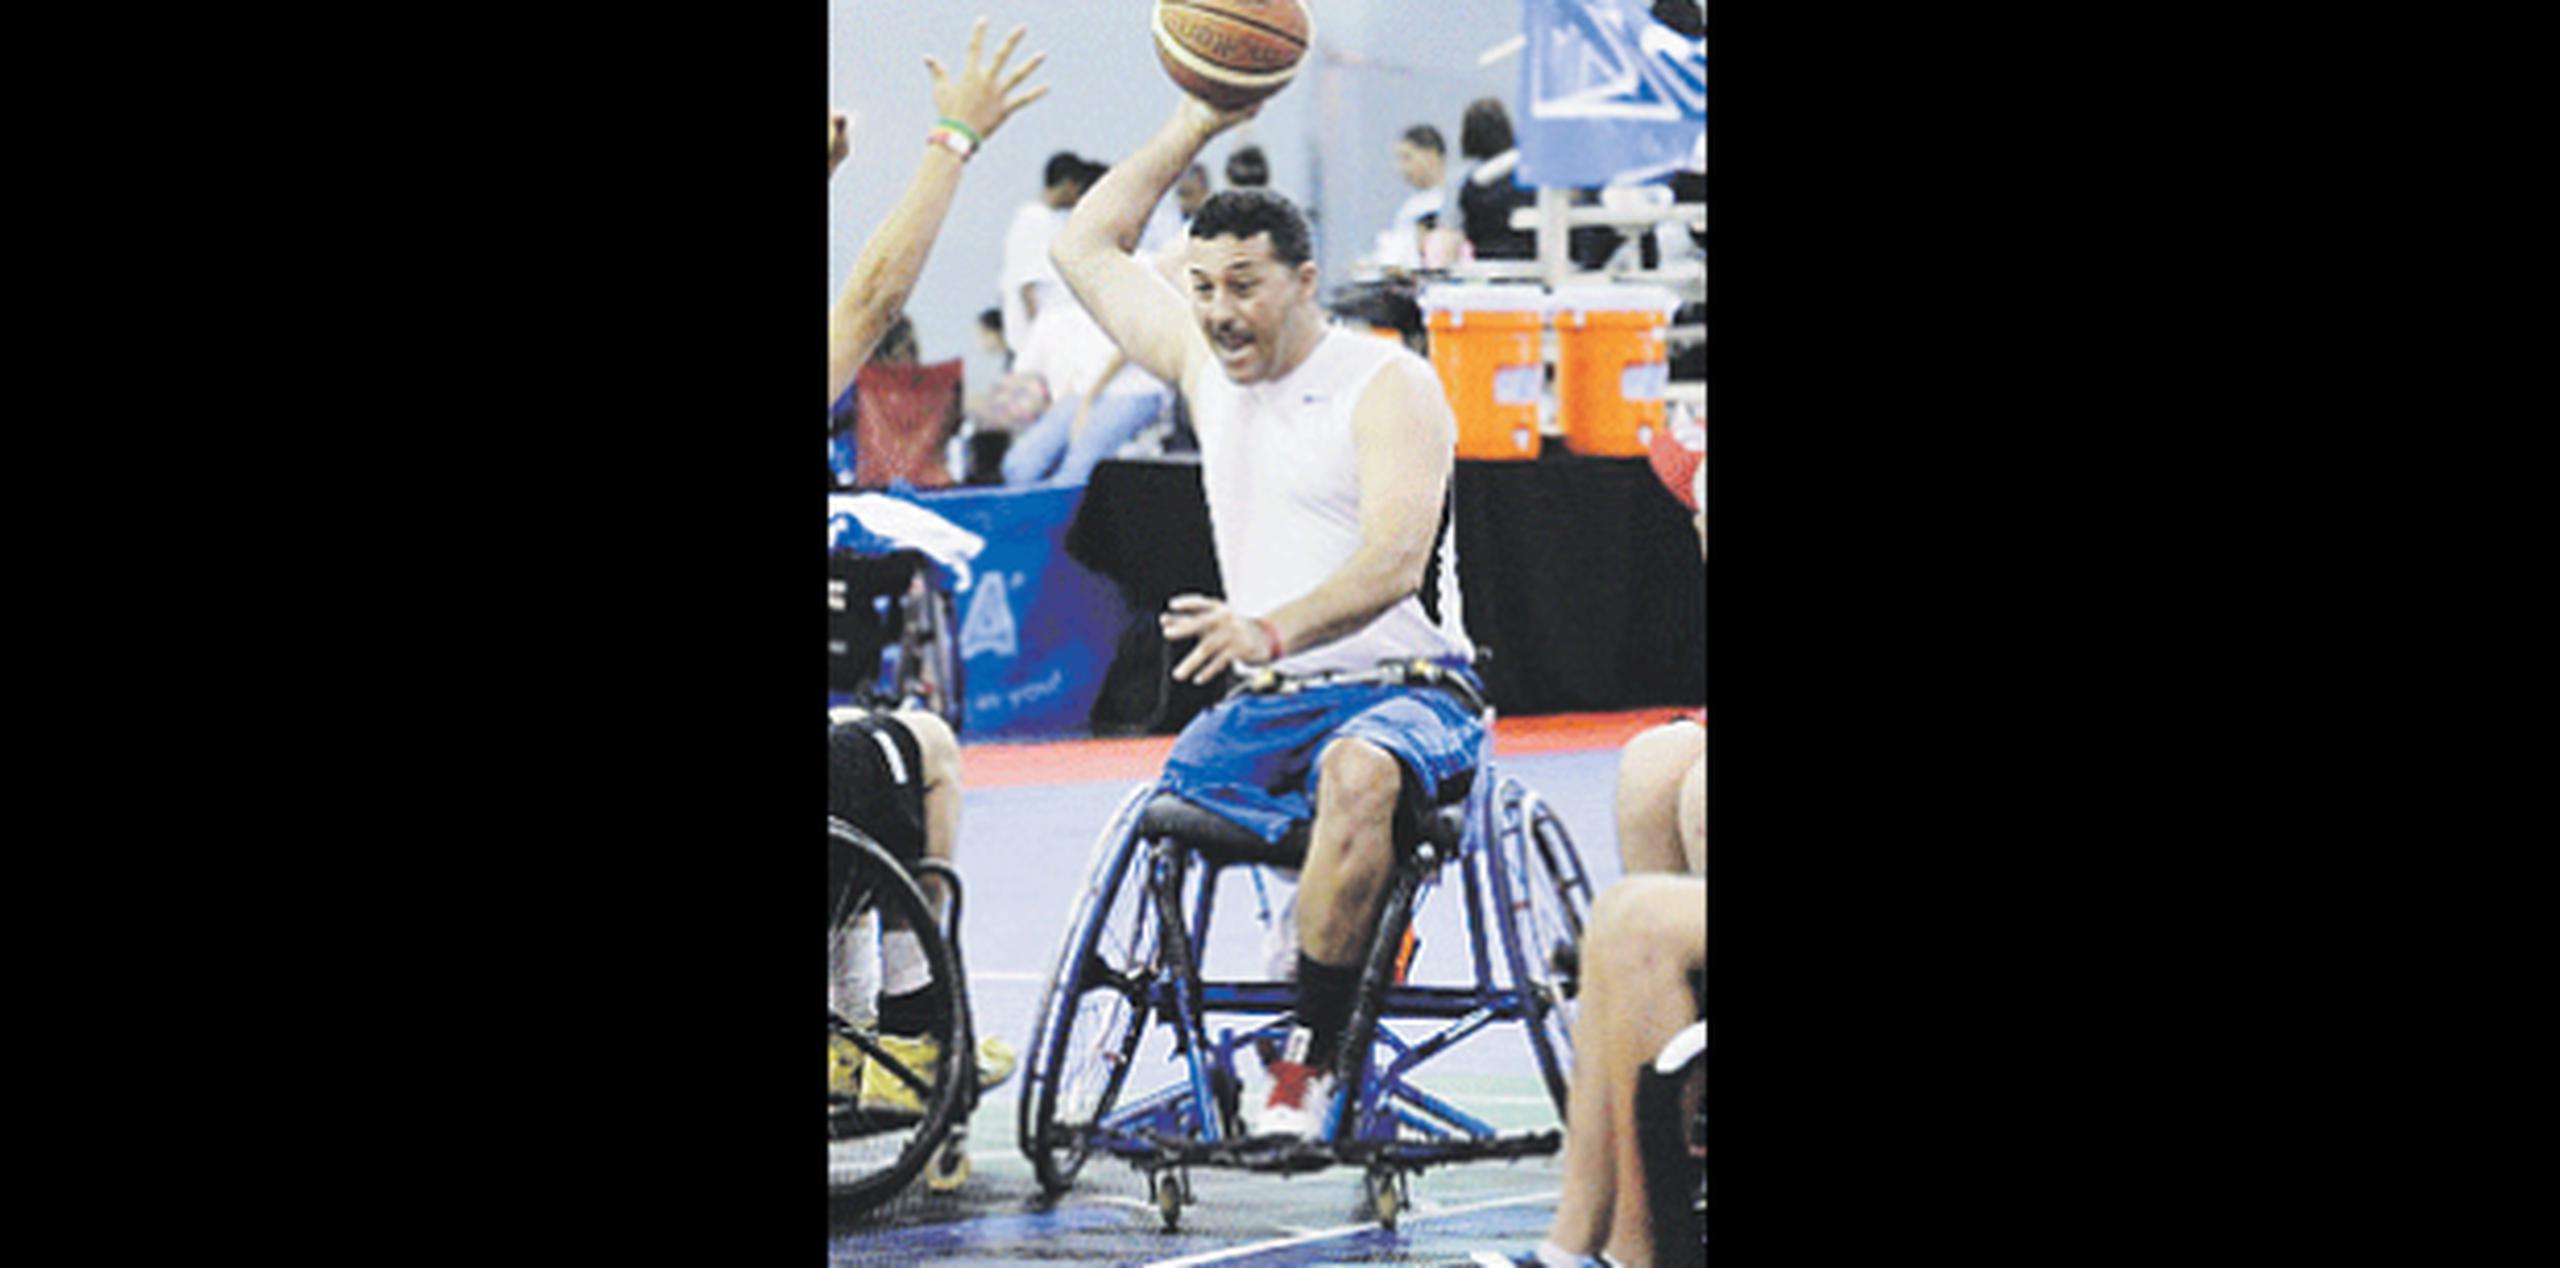 Este fin de semana habrá acción de baloncesto en sillas de ruedas en Santurce. (Archivo)